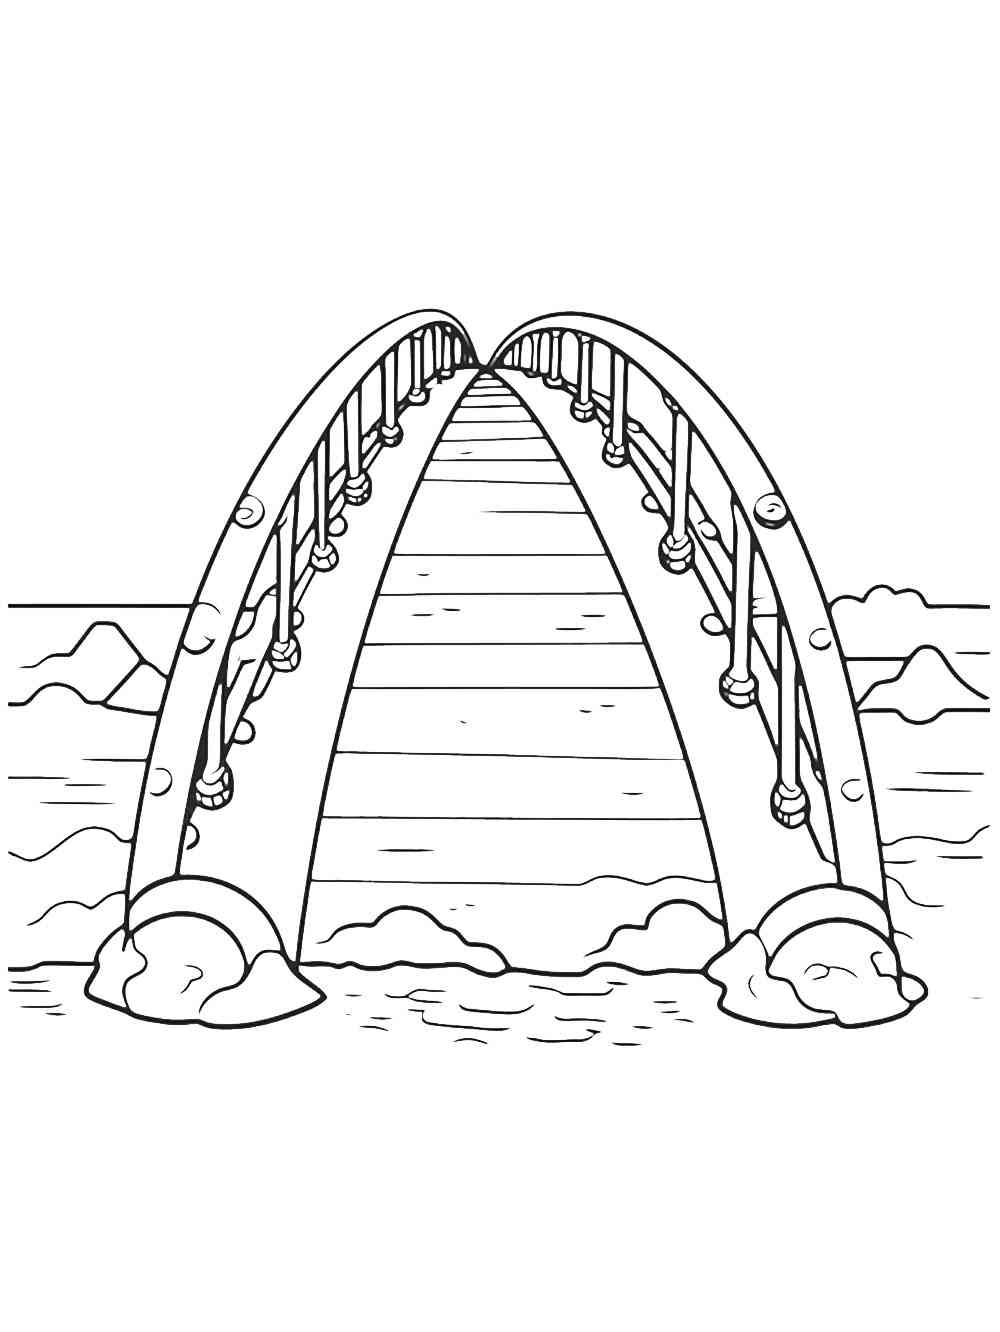 Bridge coloring pages